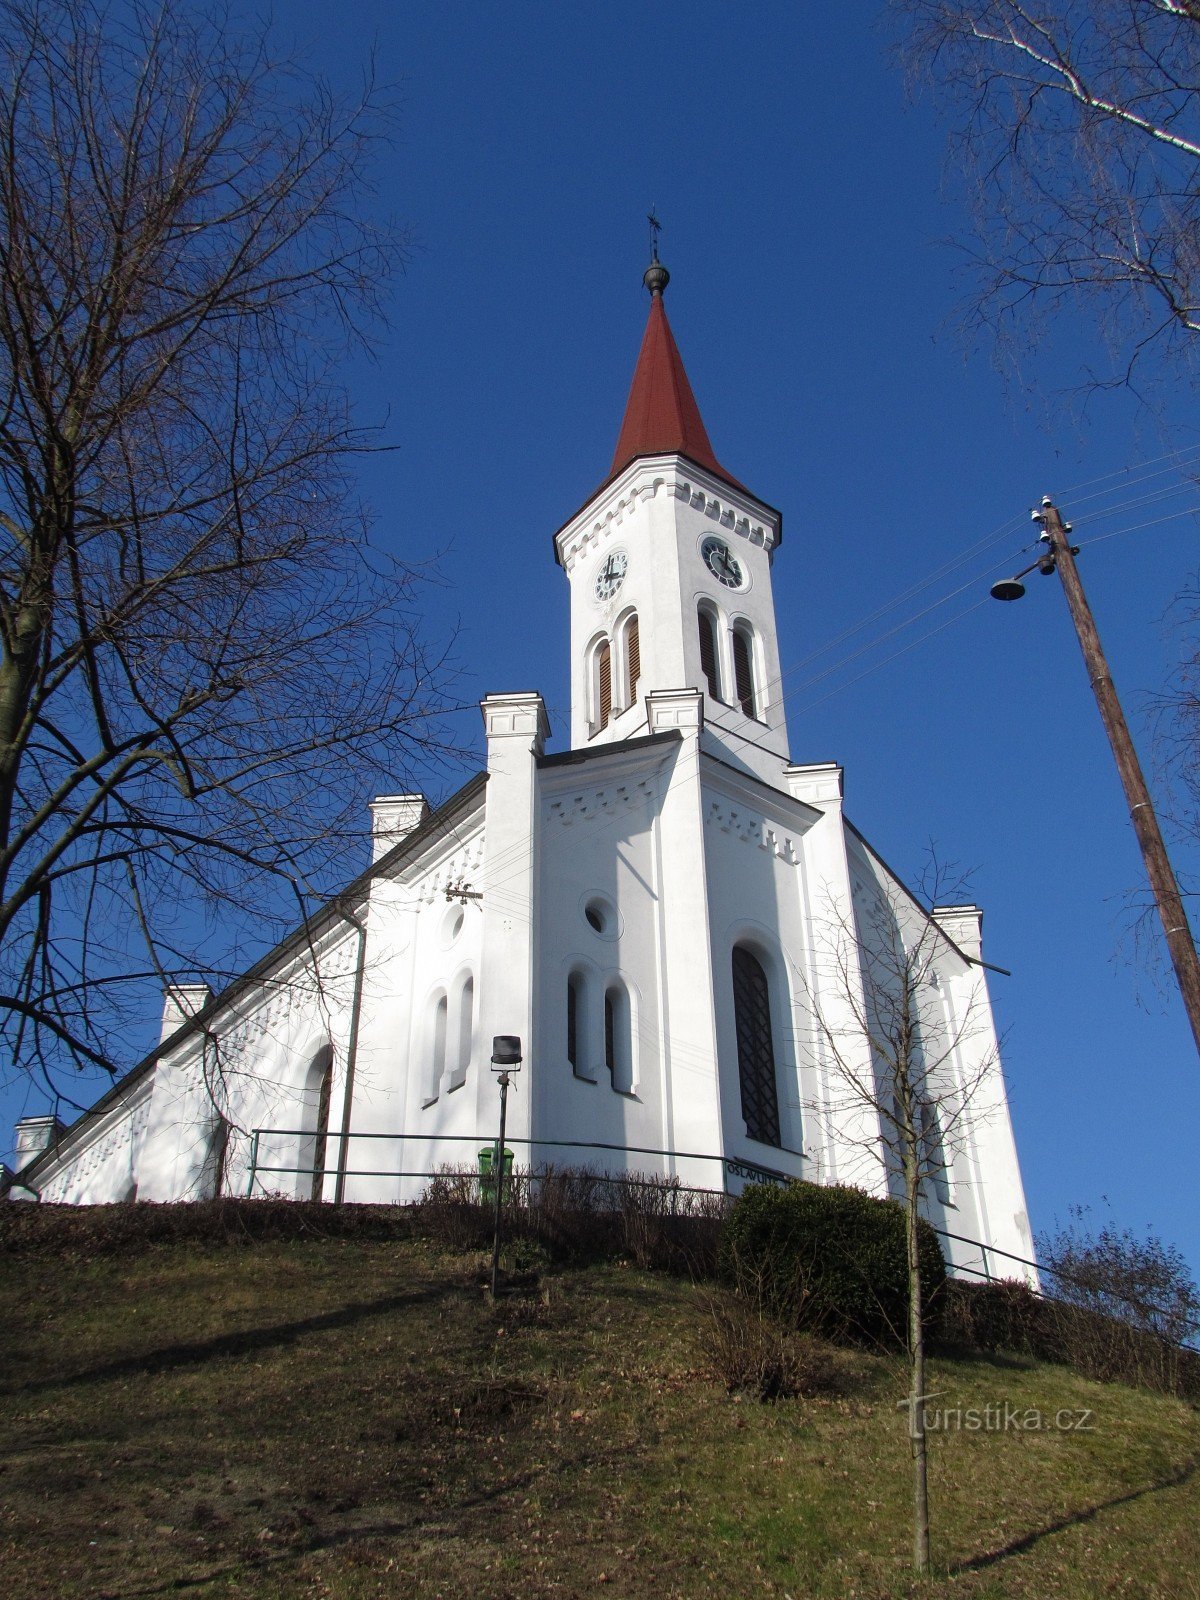 Zádveřice-Raková - église évangélique